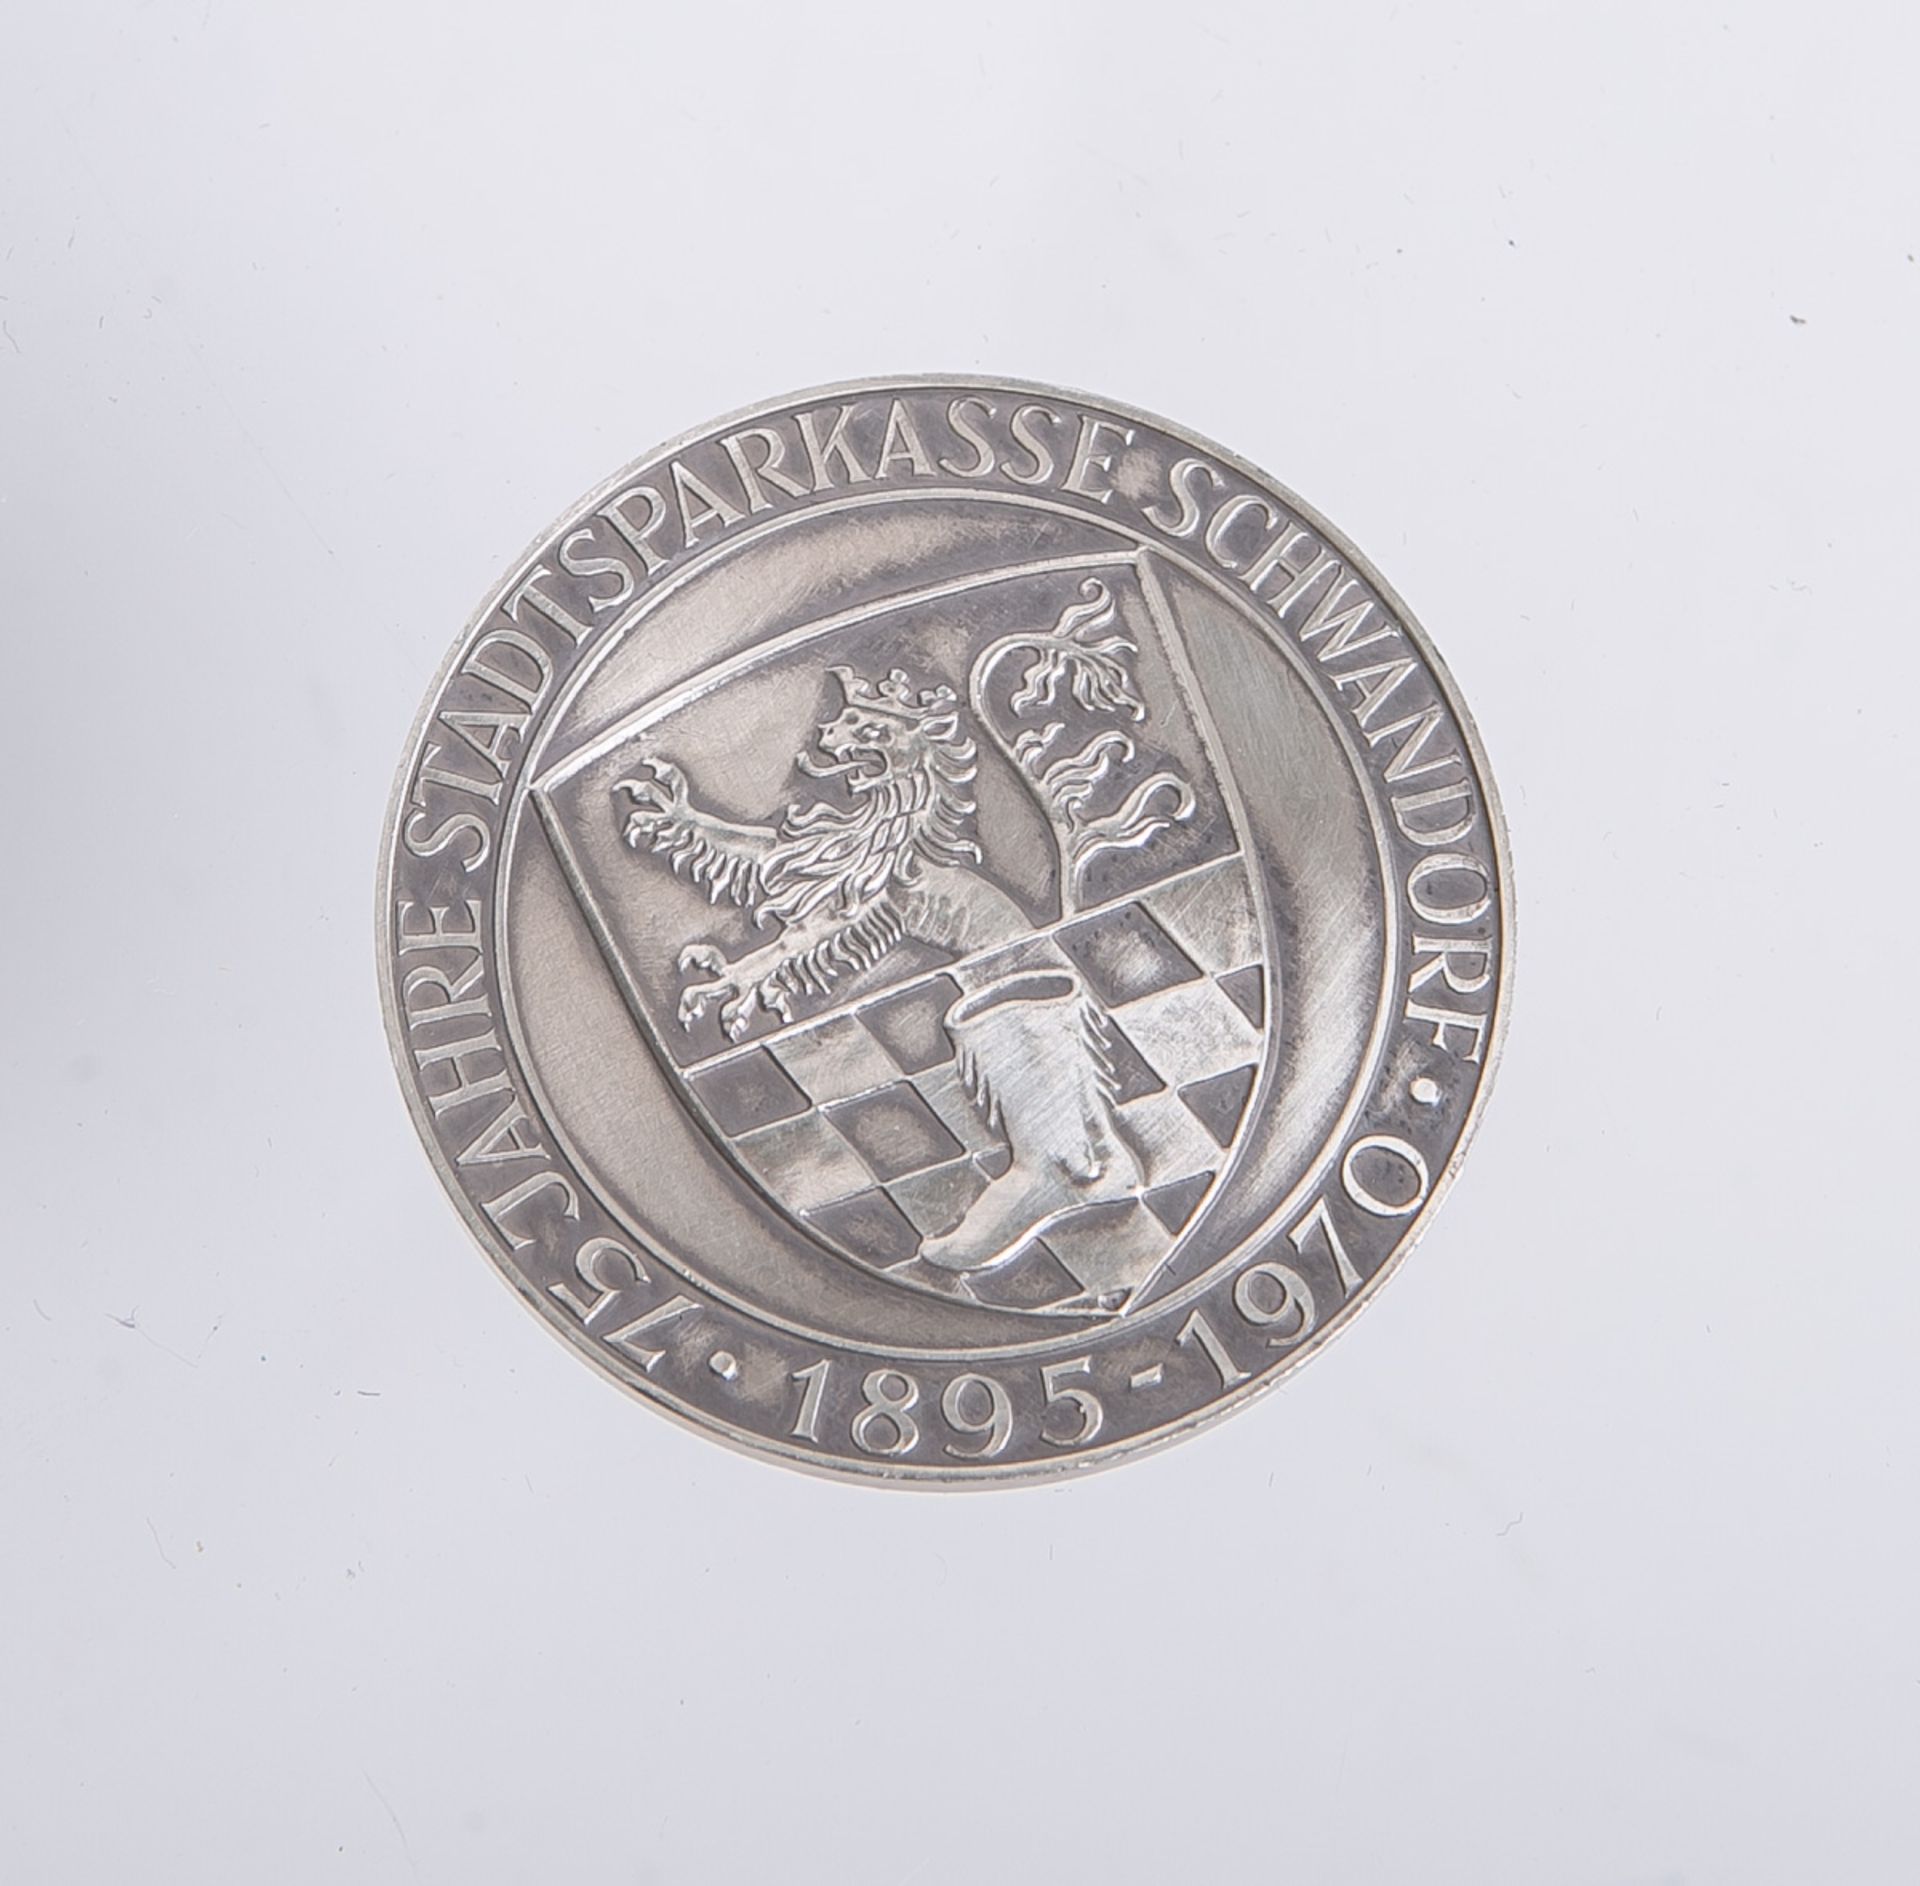 Silbermedaille "75 Jahre Stadtsparkasse Schwandorf 1895 - 1970" - Image 2 of 2